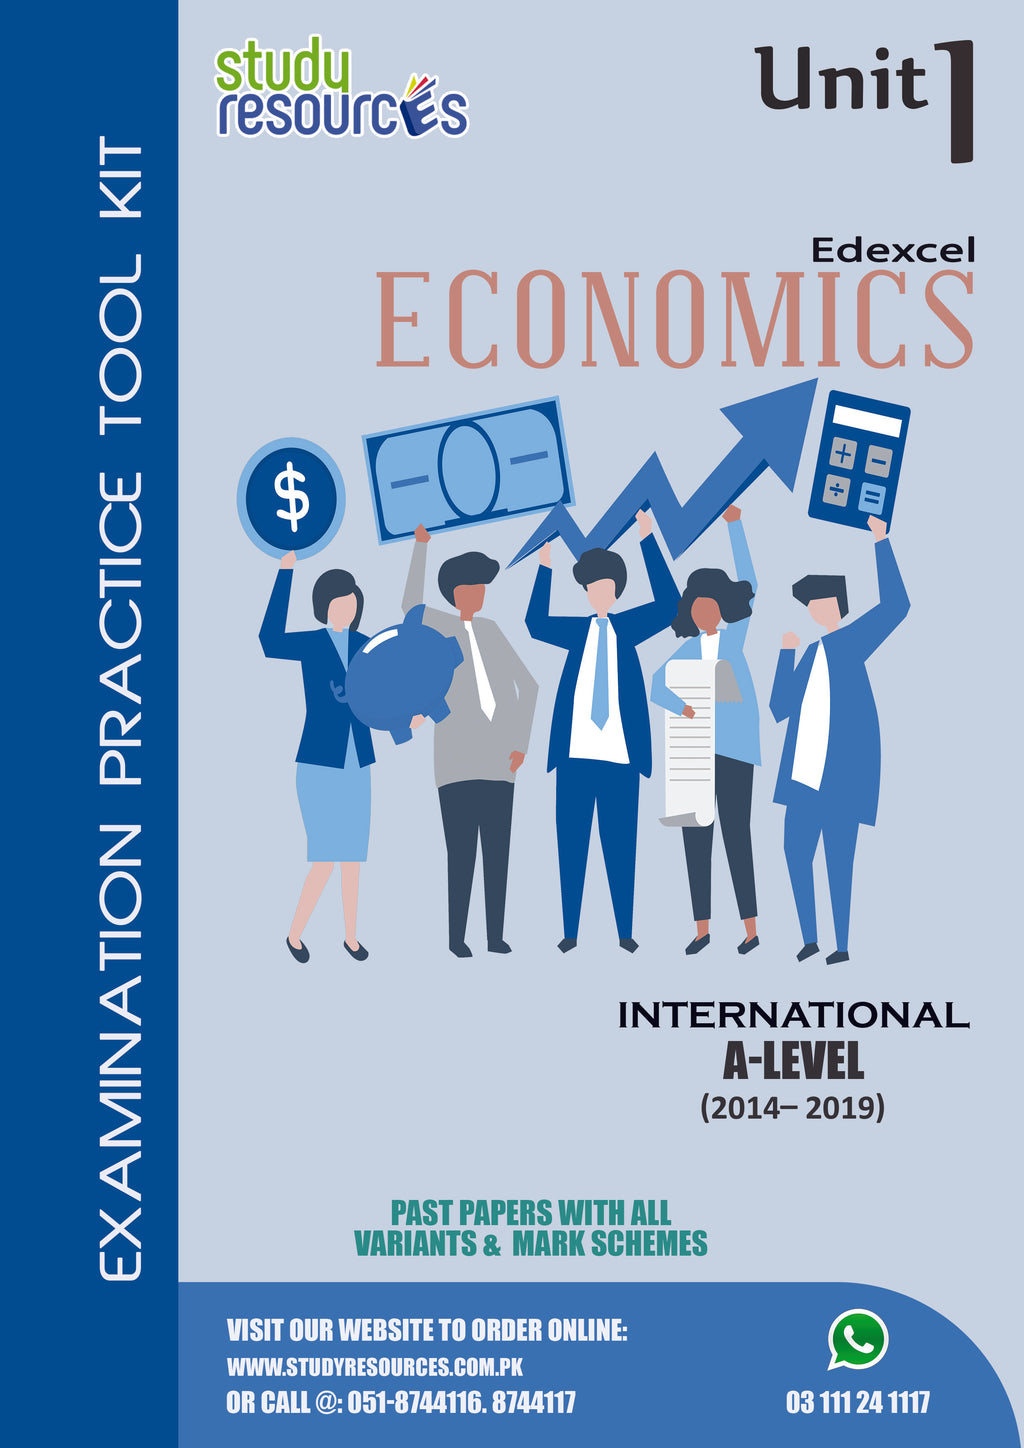 Edexcel A-Level Economics Unit-1 Past Papers (2014-2019)